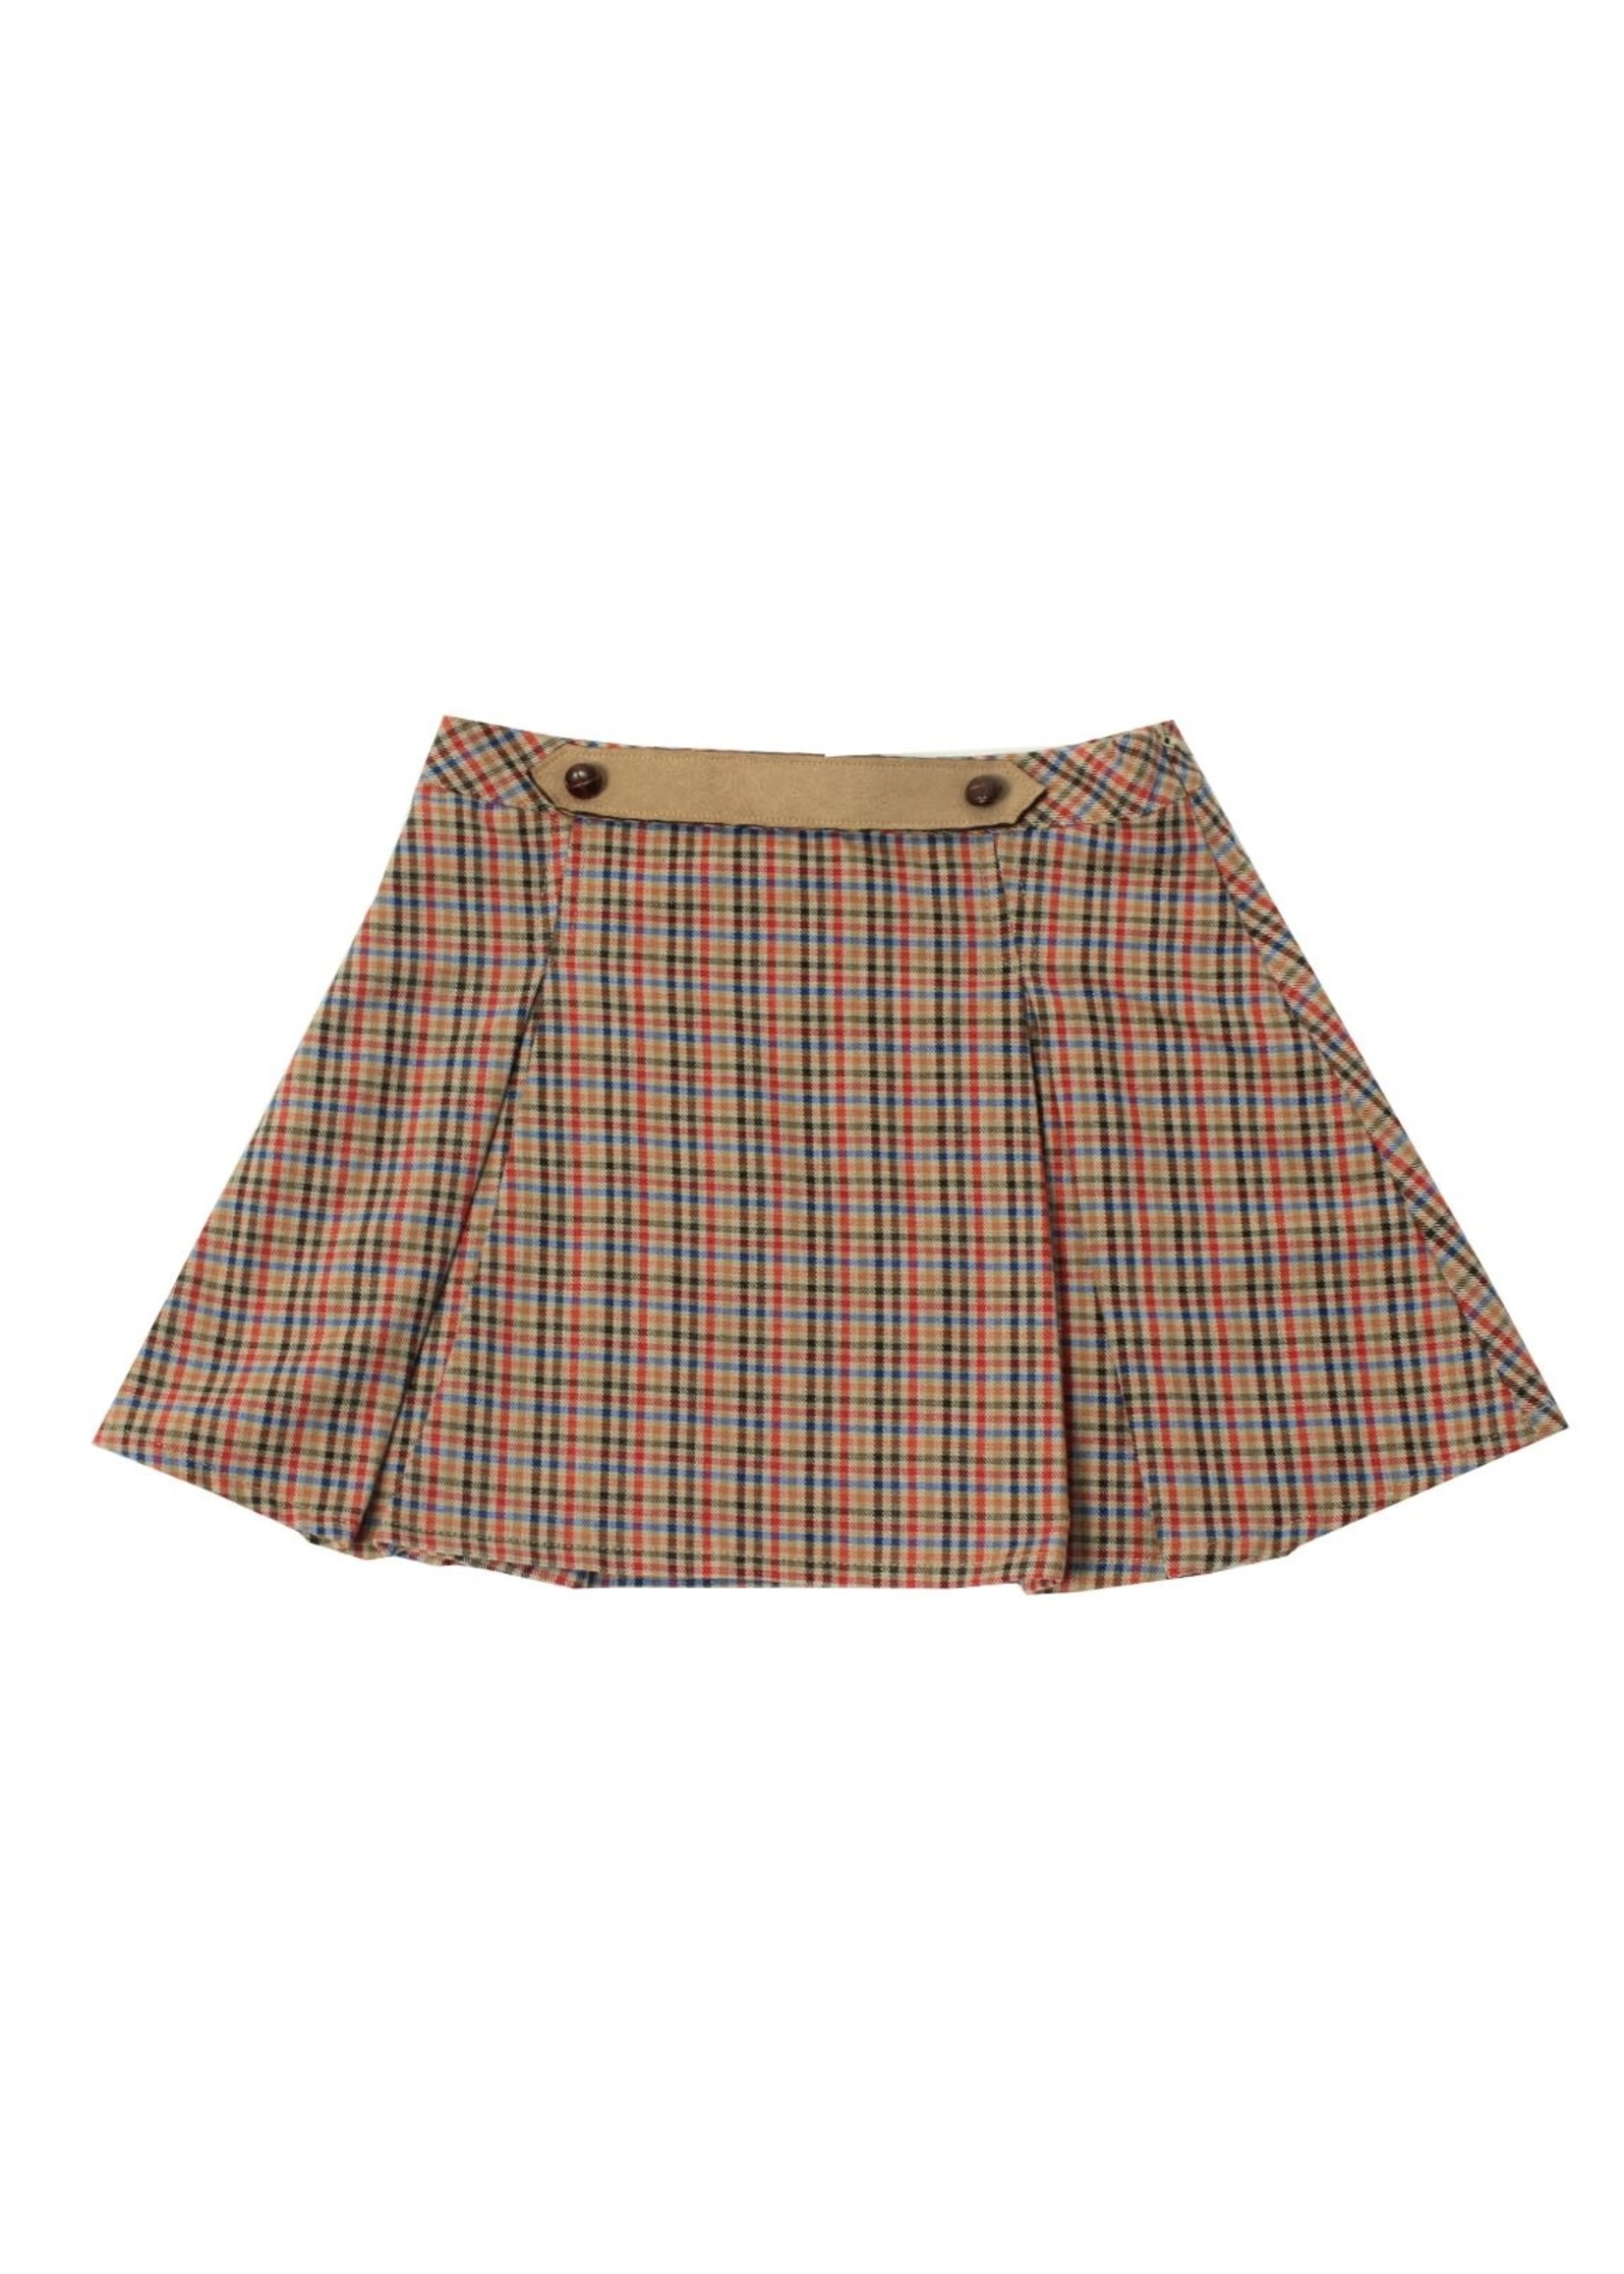 Dr Kid Girl Skirt 337-Bege Mescla-DK417